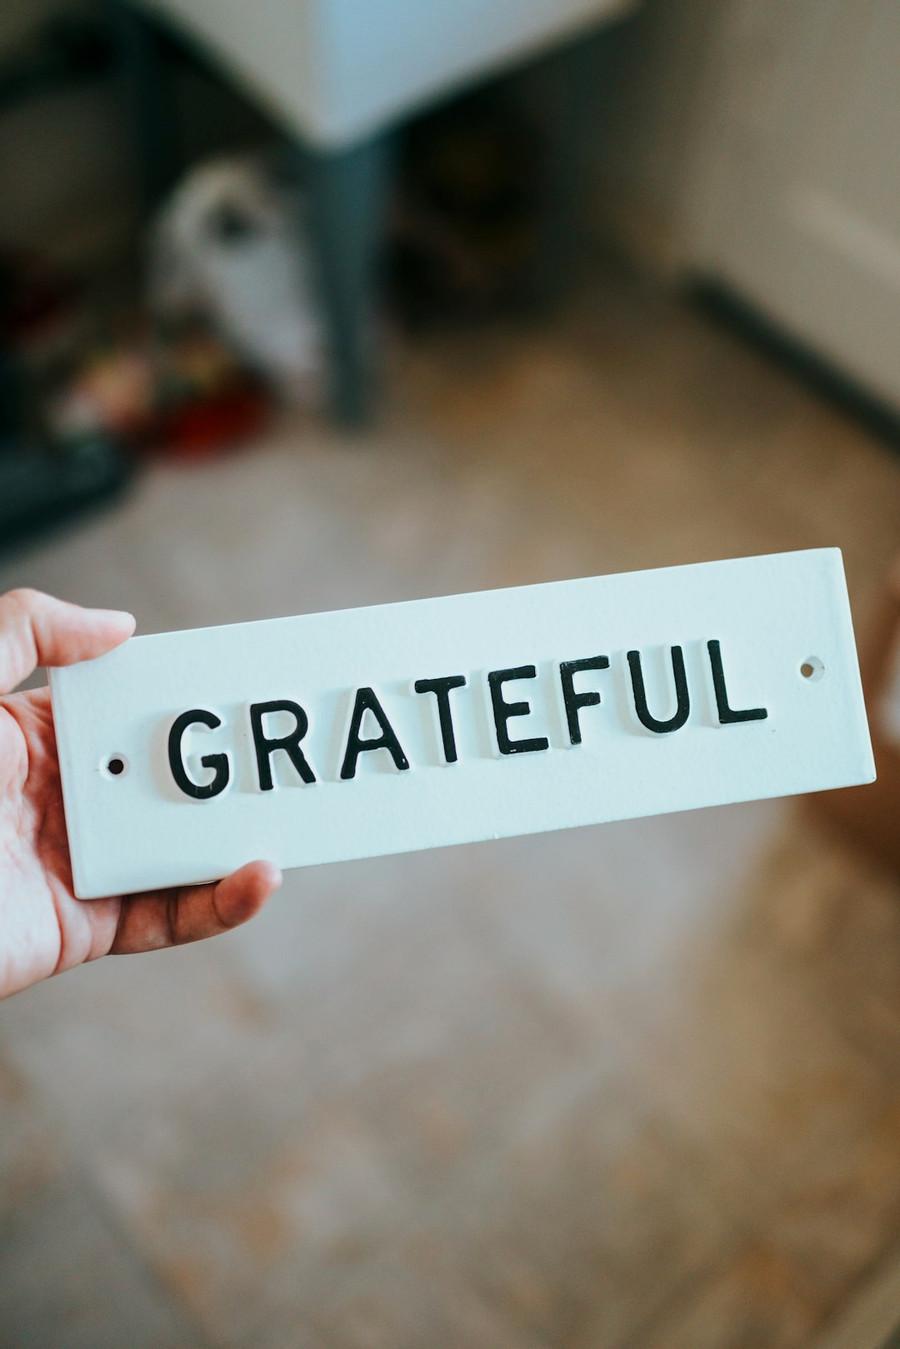 8. Practicing gratitude 🙏